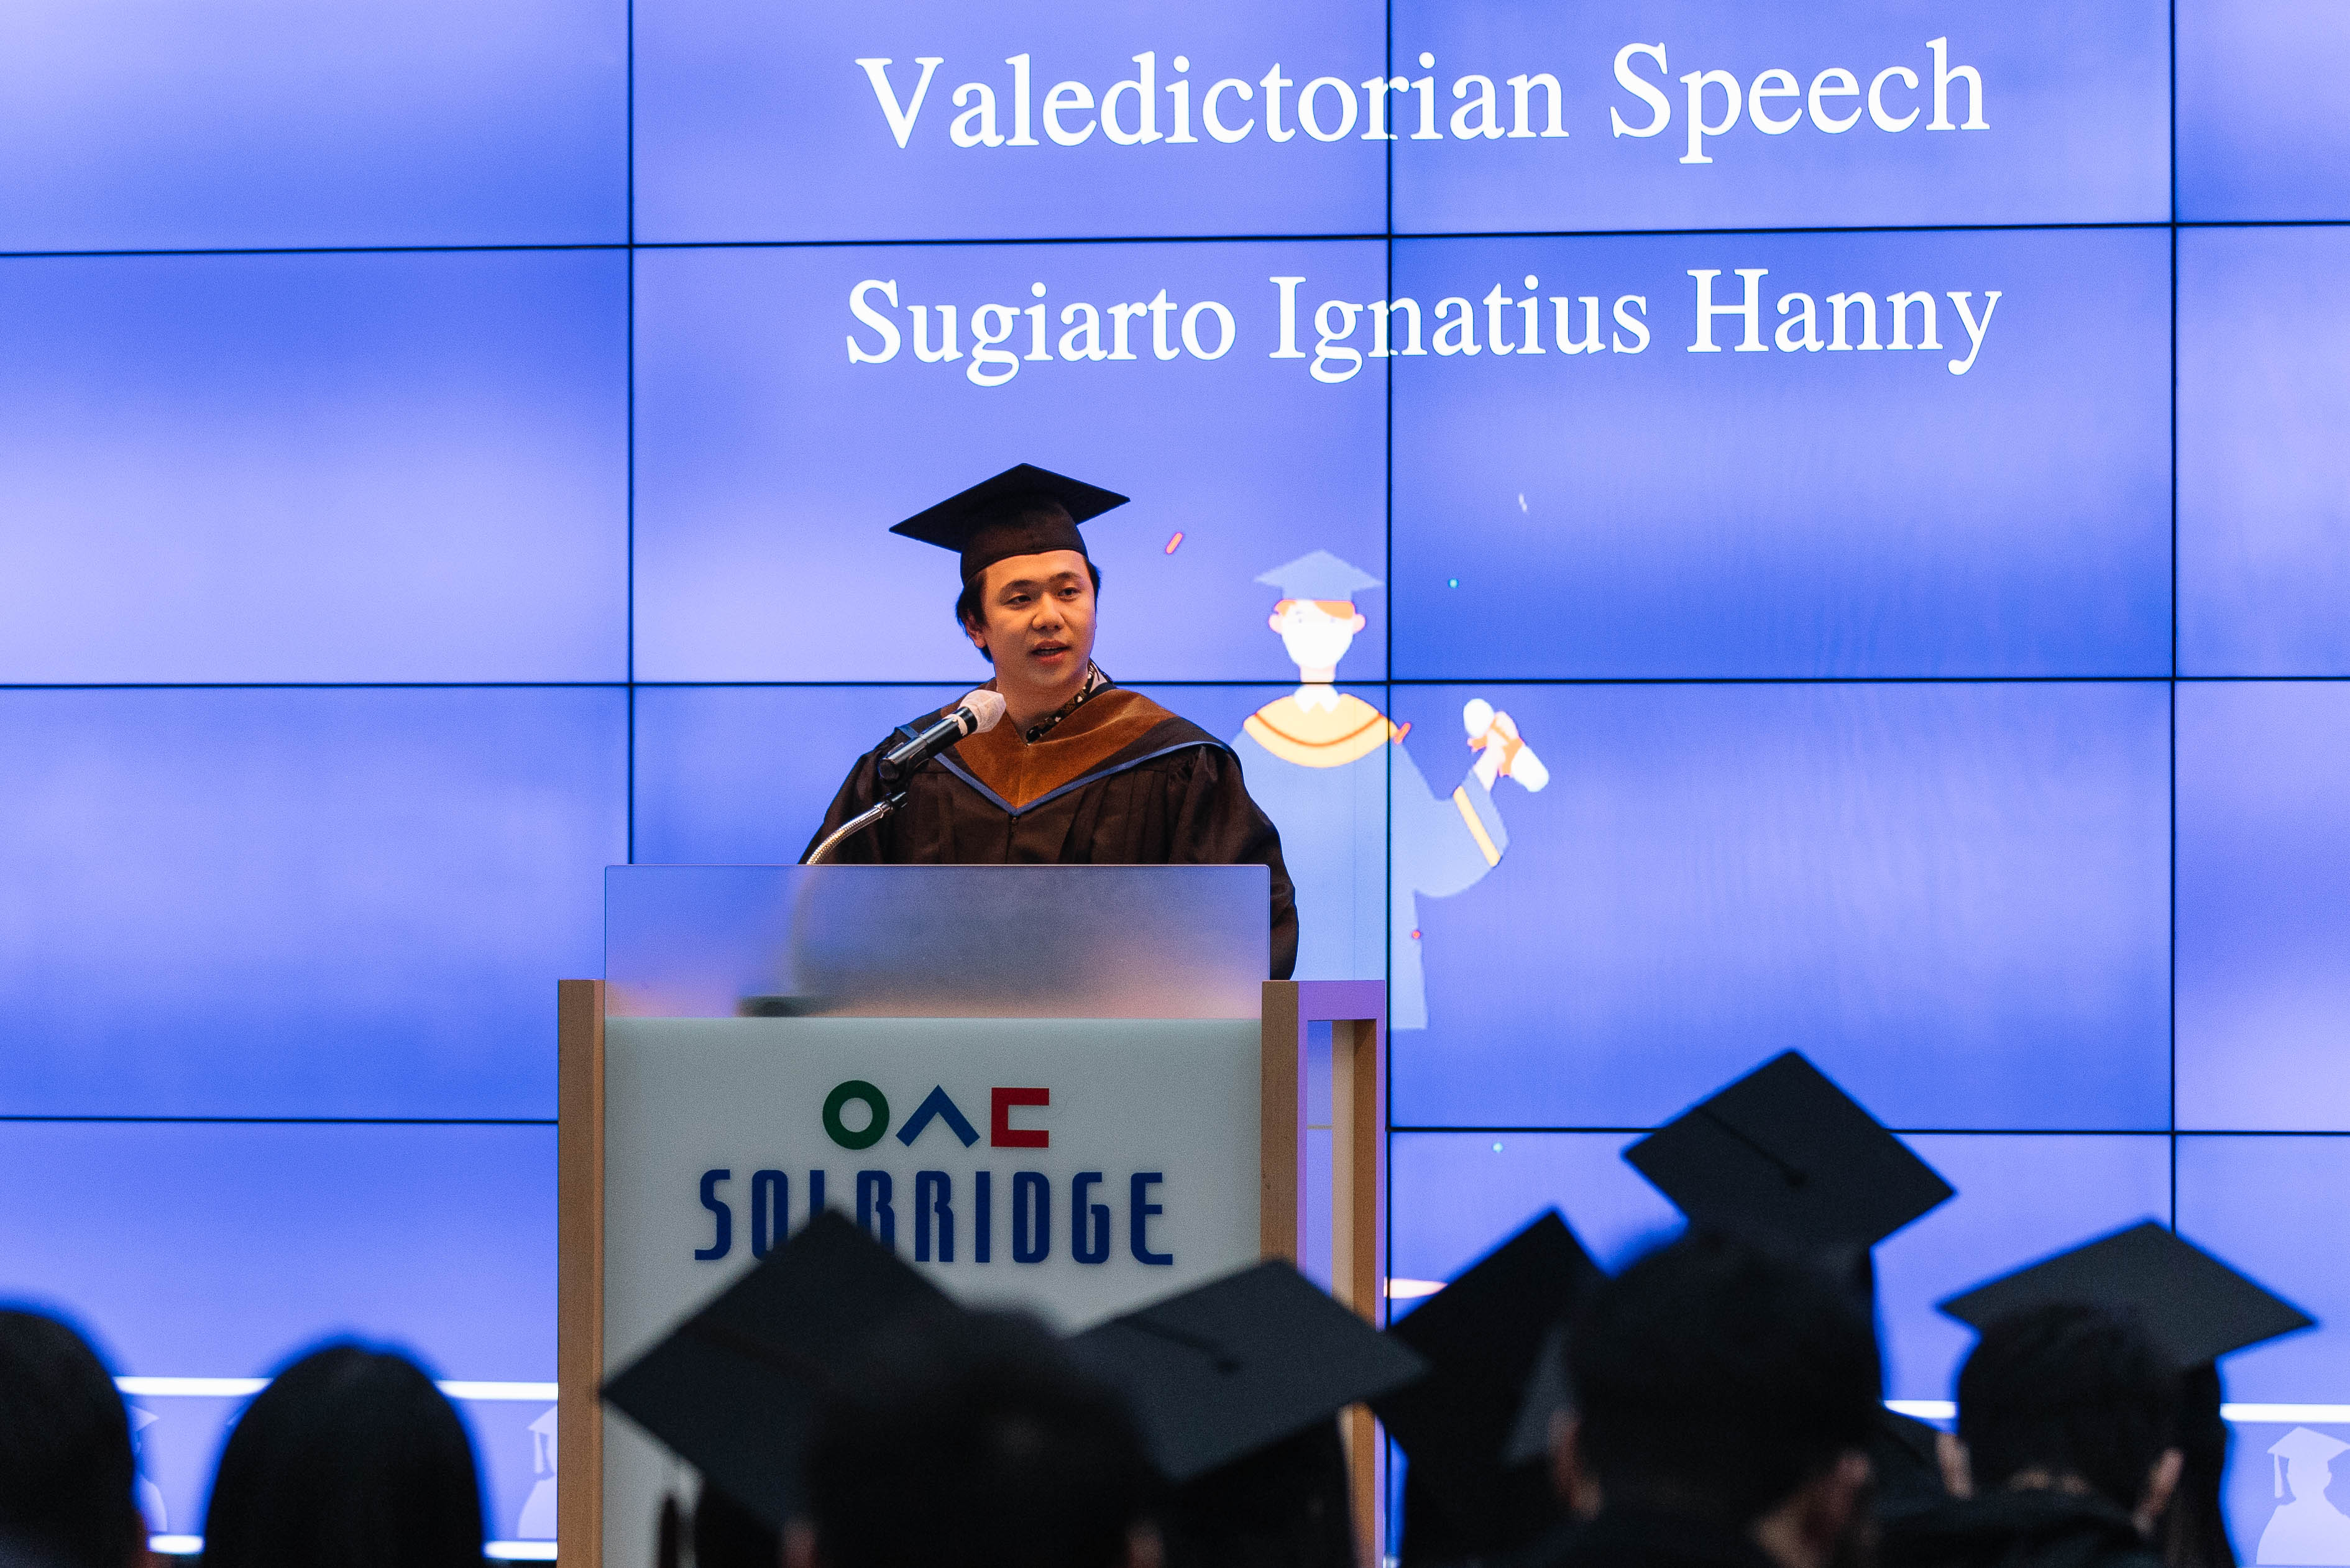 Ignatius Hanny Sugiarto: Masters (MIMT) Valedictorian Class of 2022